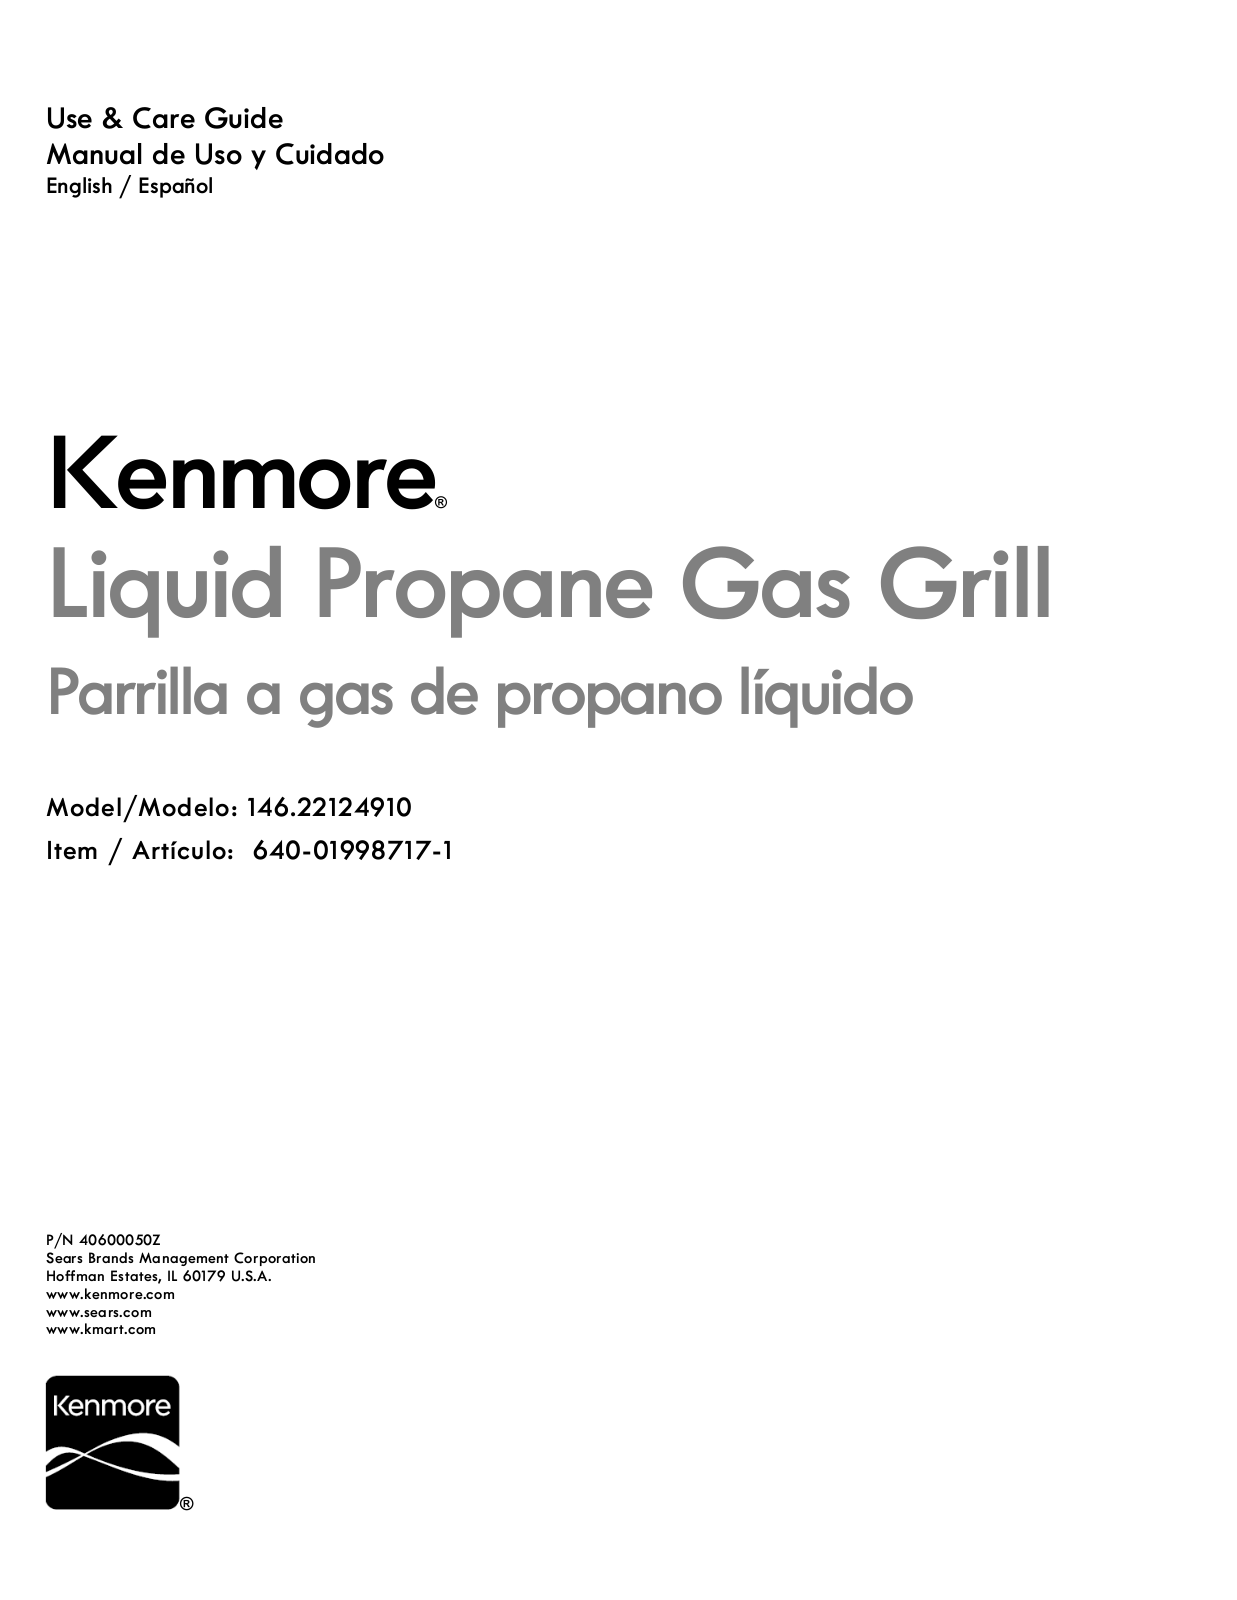 Kenmore 640-01998717-1, 14622124910 Owner’s Manual